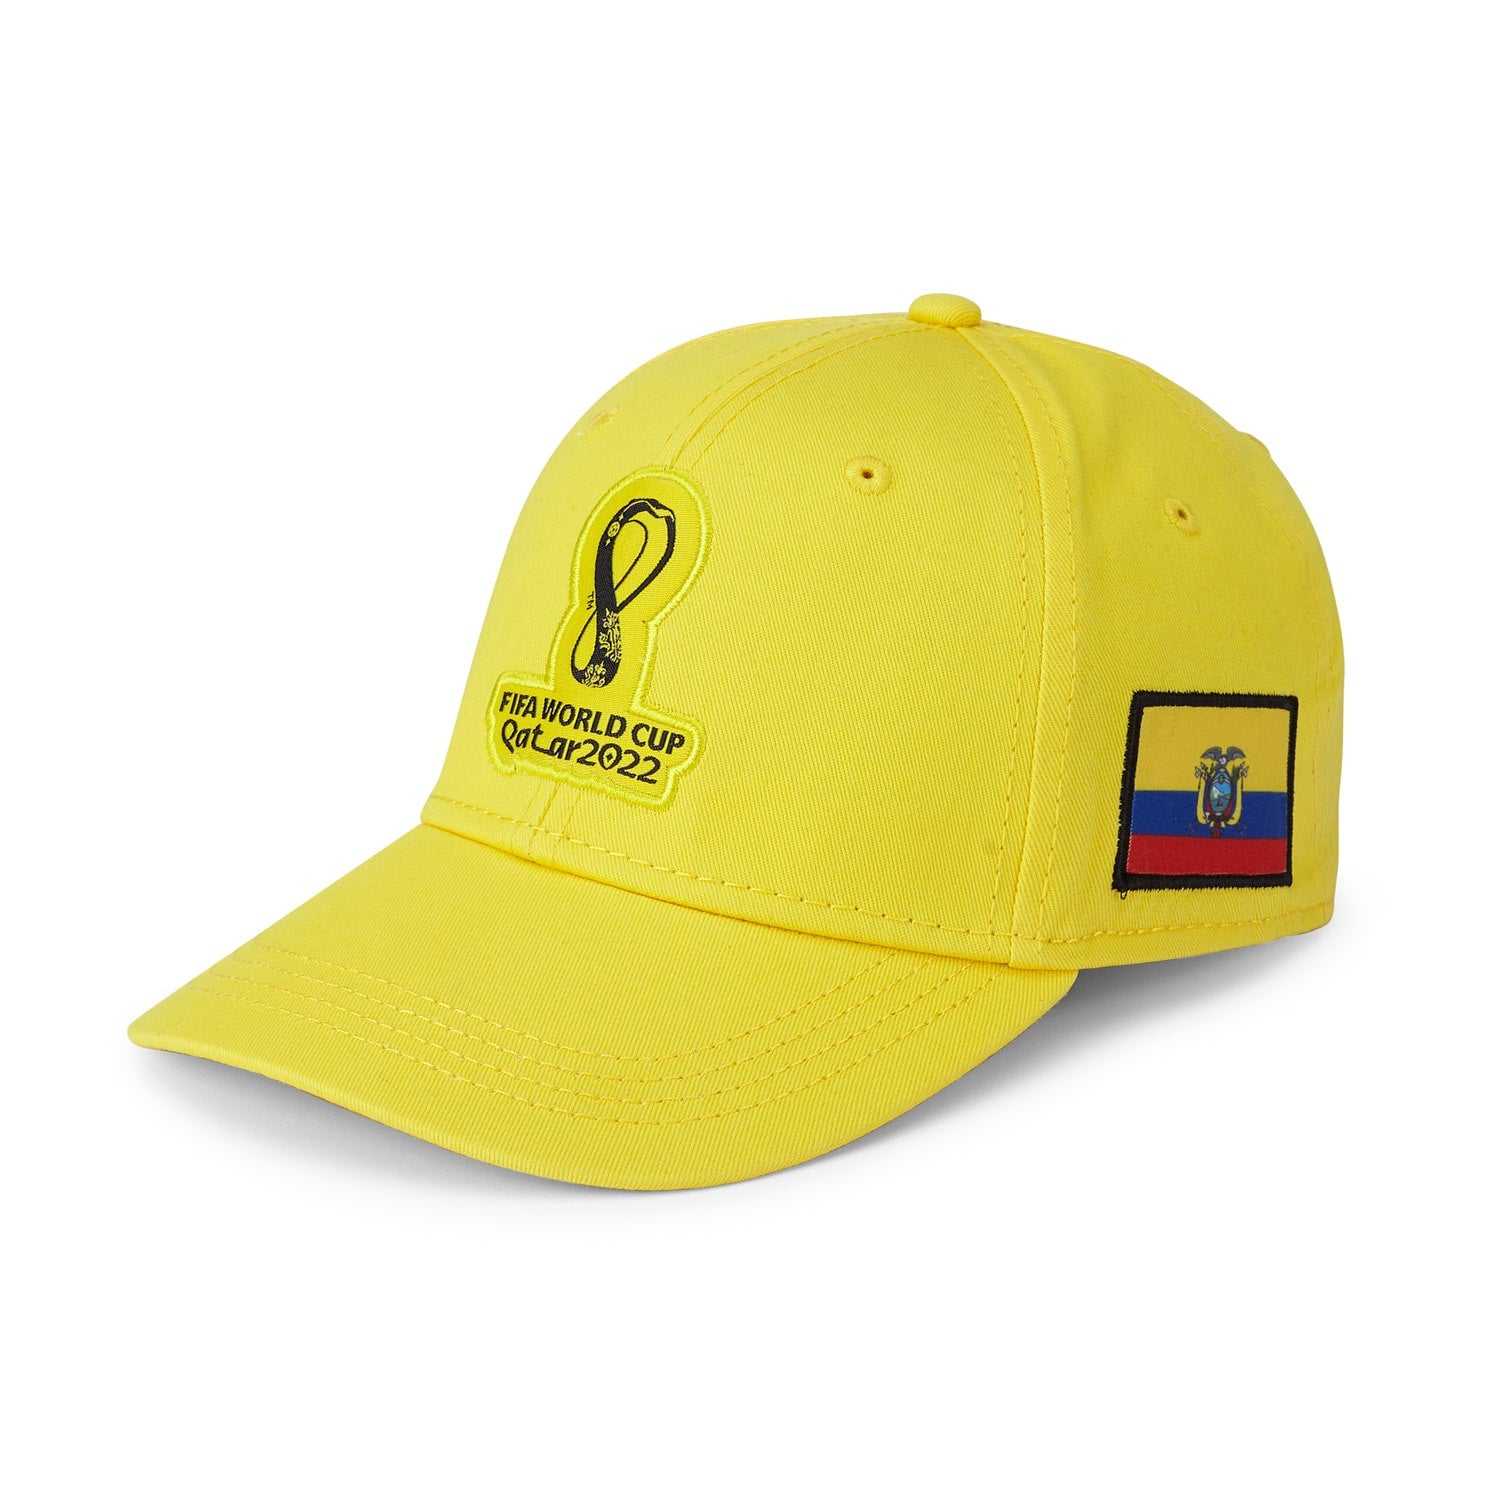 2022 World Cup Ecuador Yellow Cap - Mens